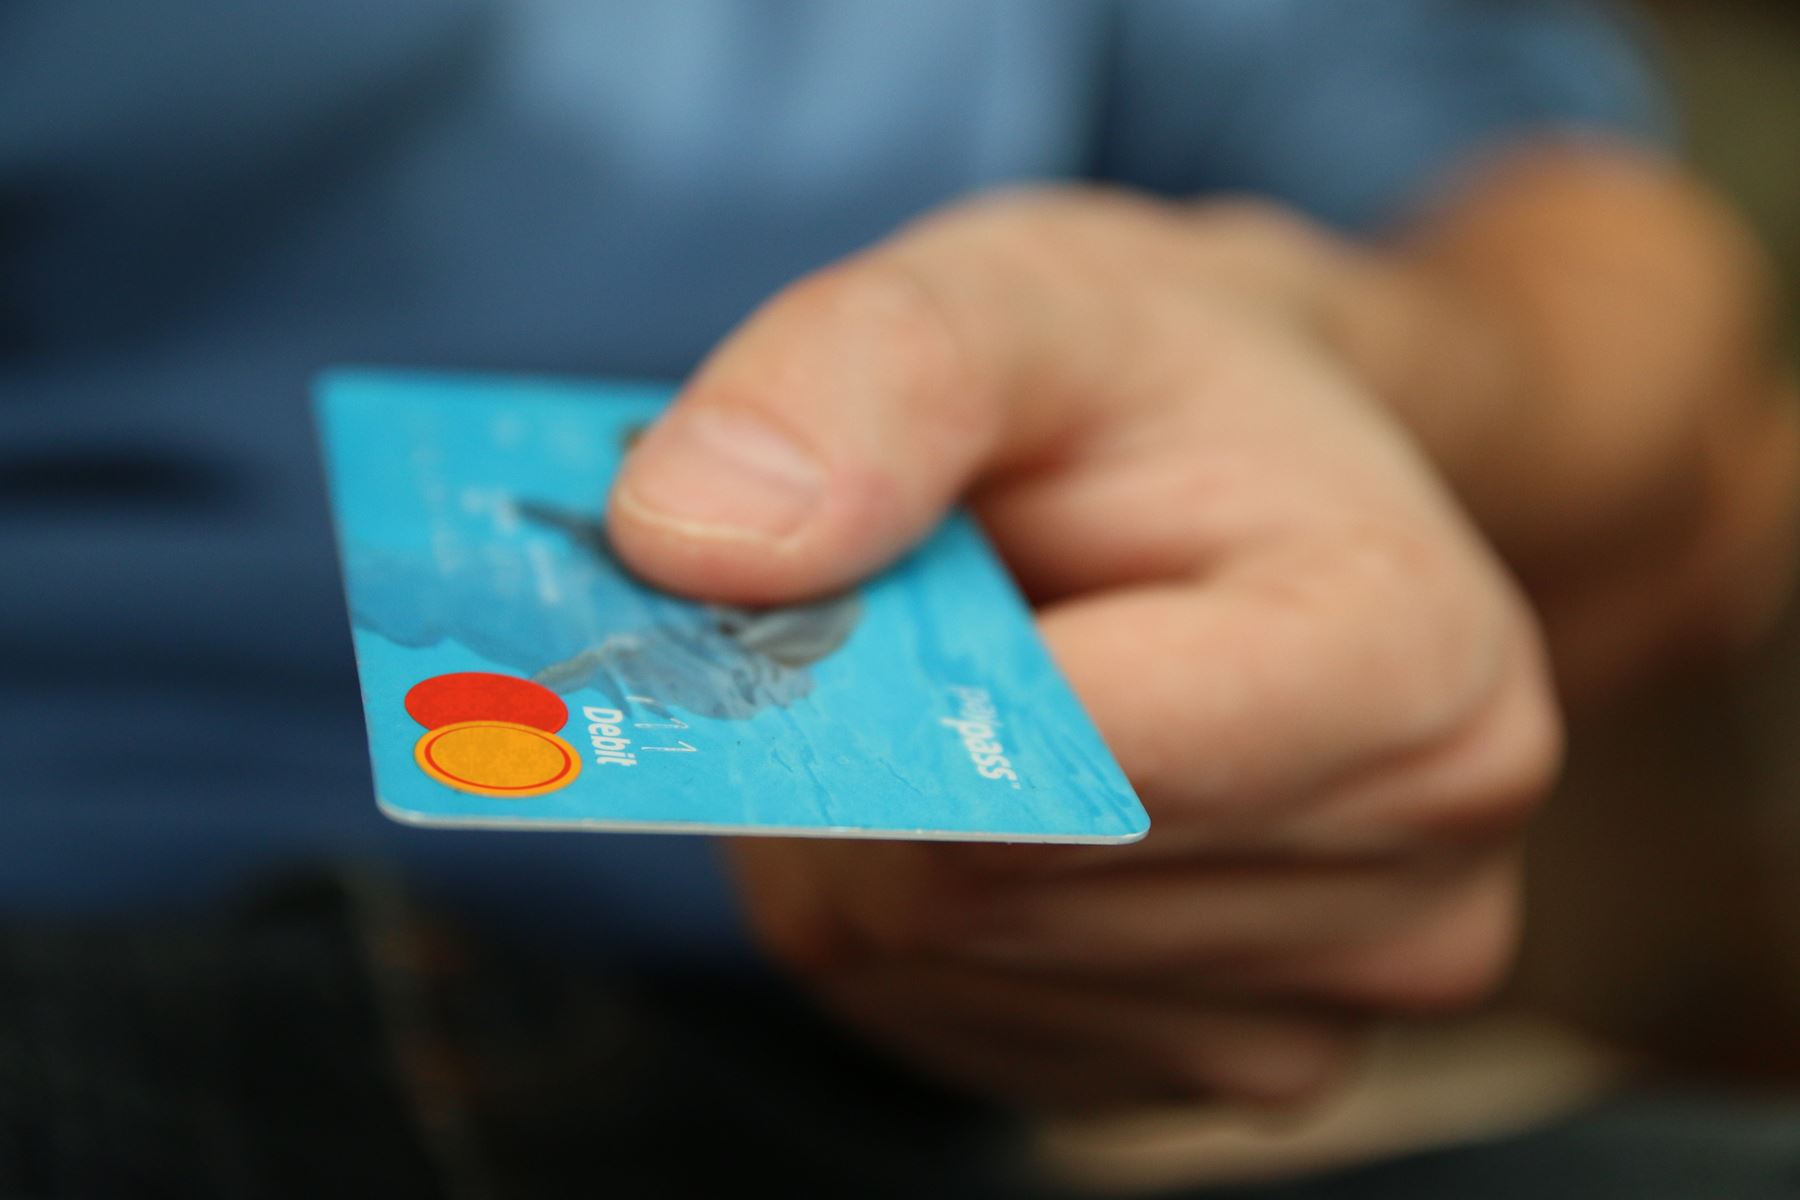 Debit Bank Card Features Image